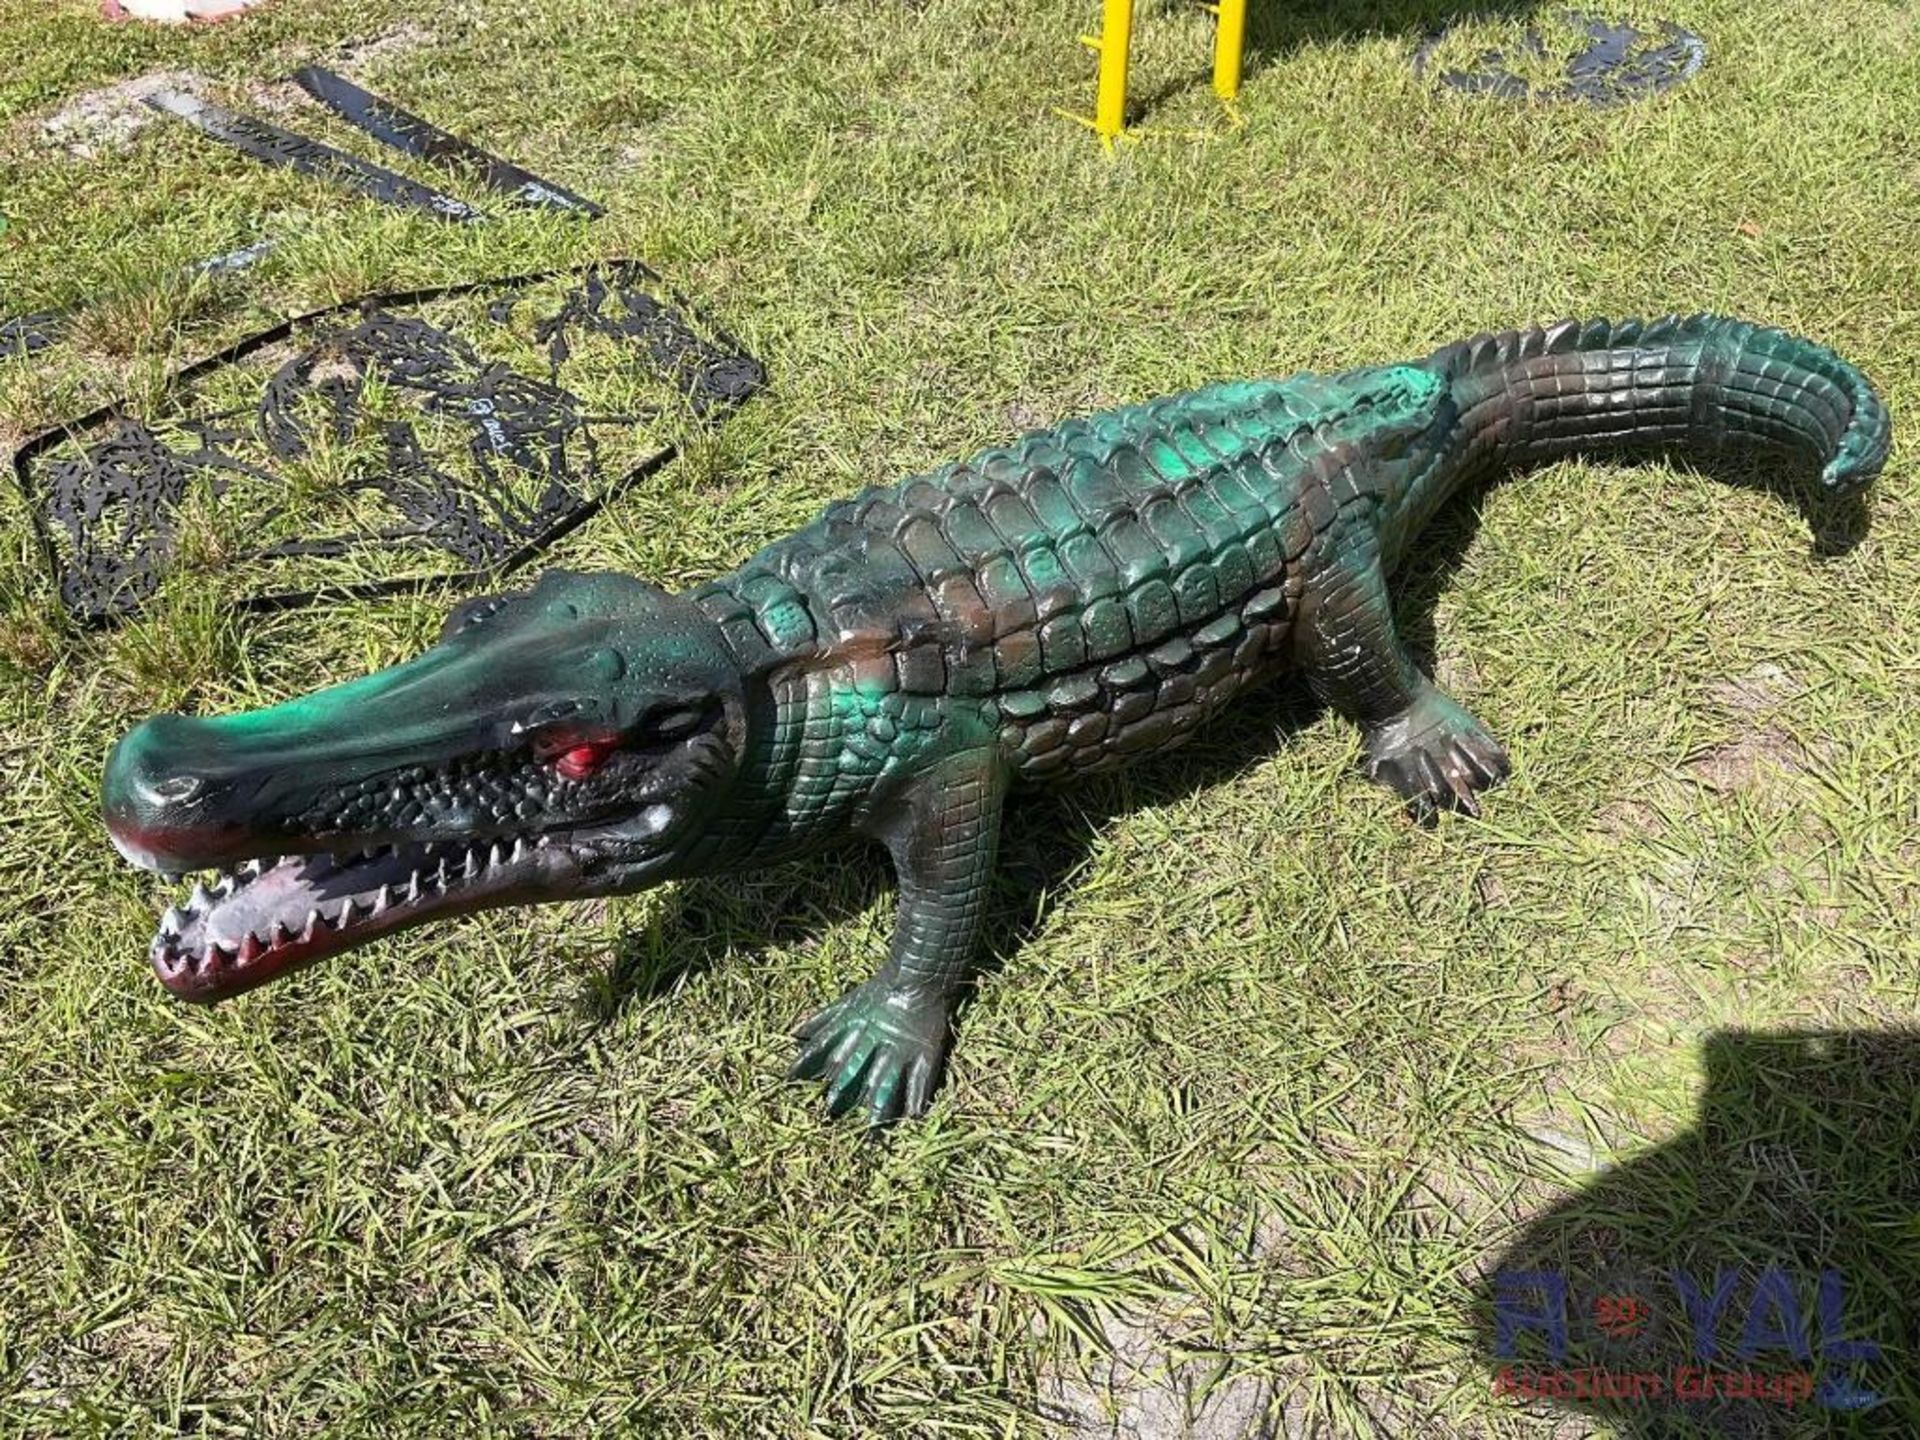 Alligator Figure